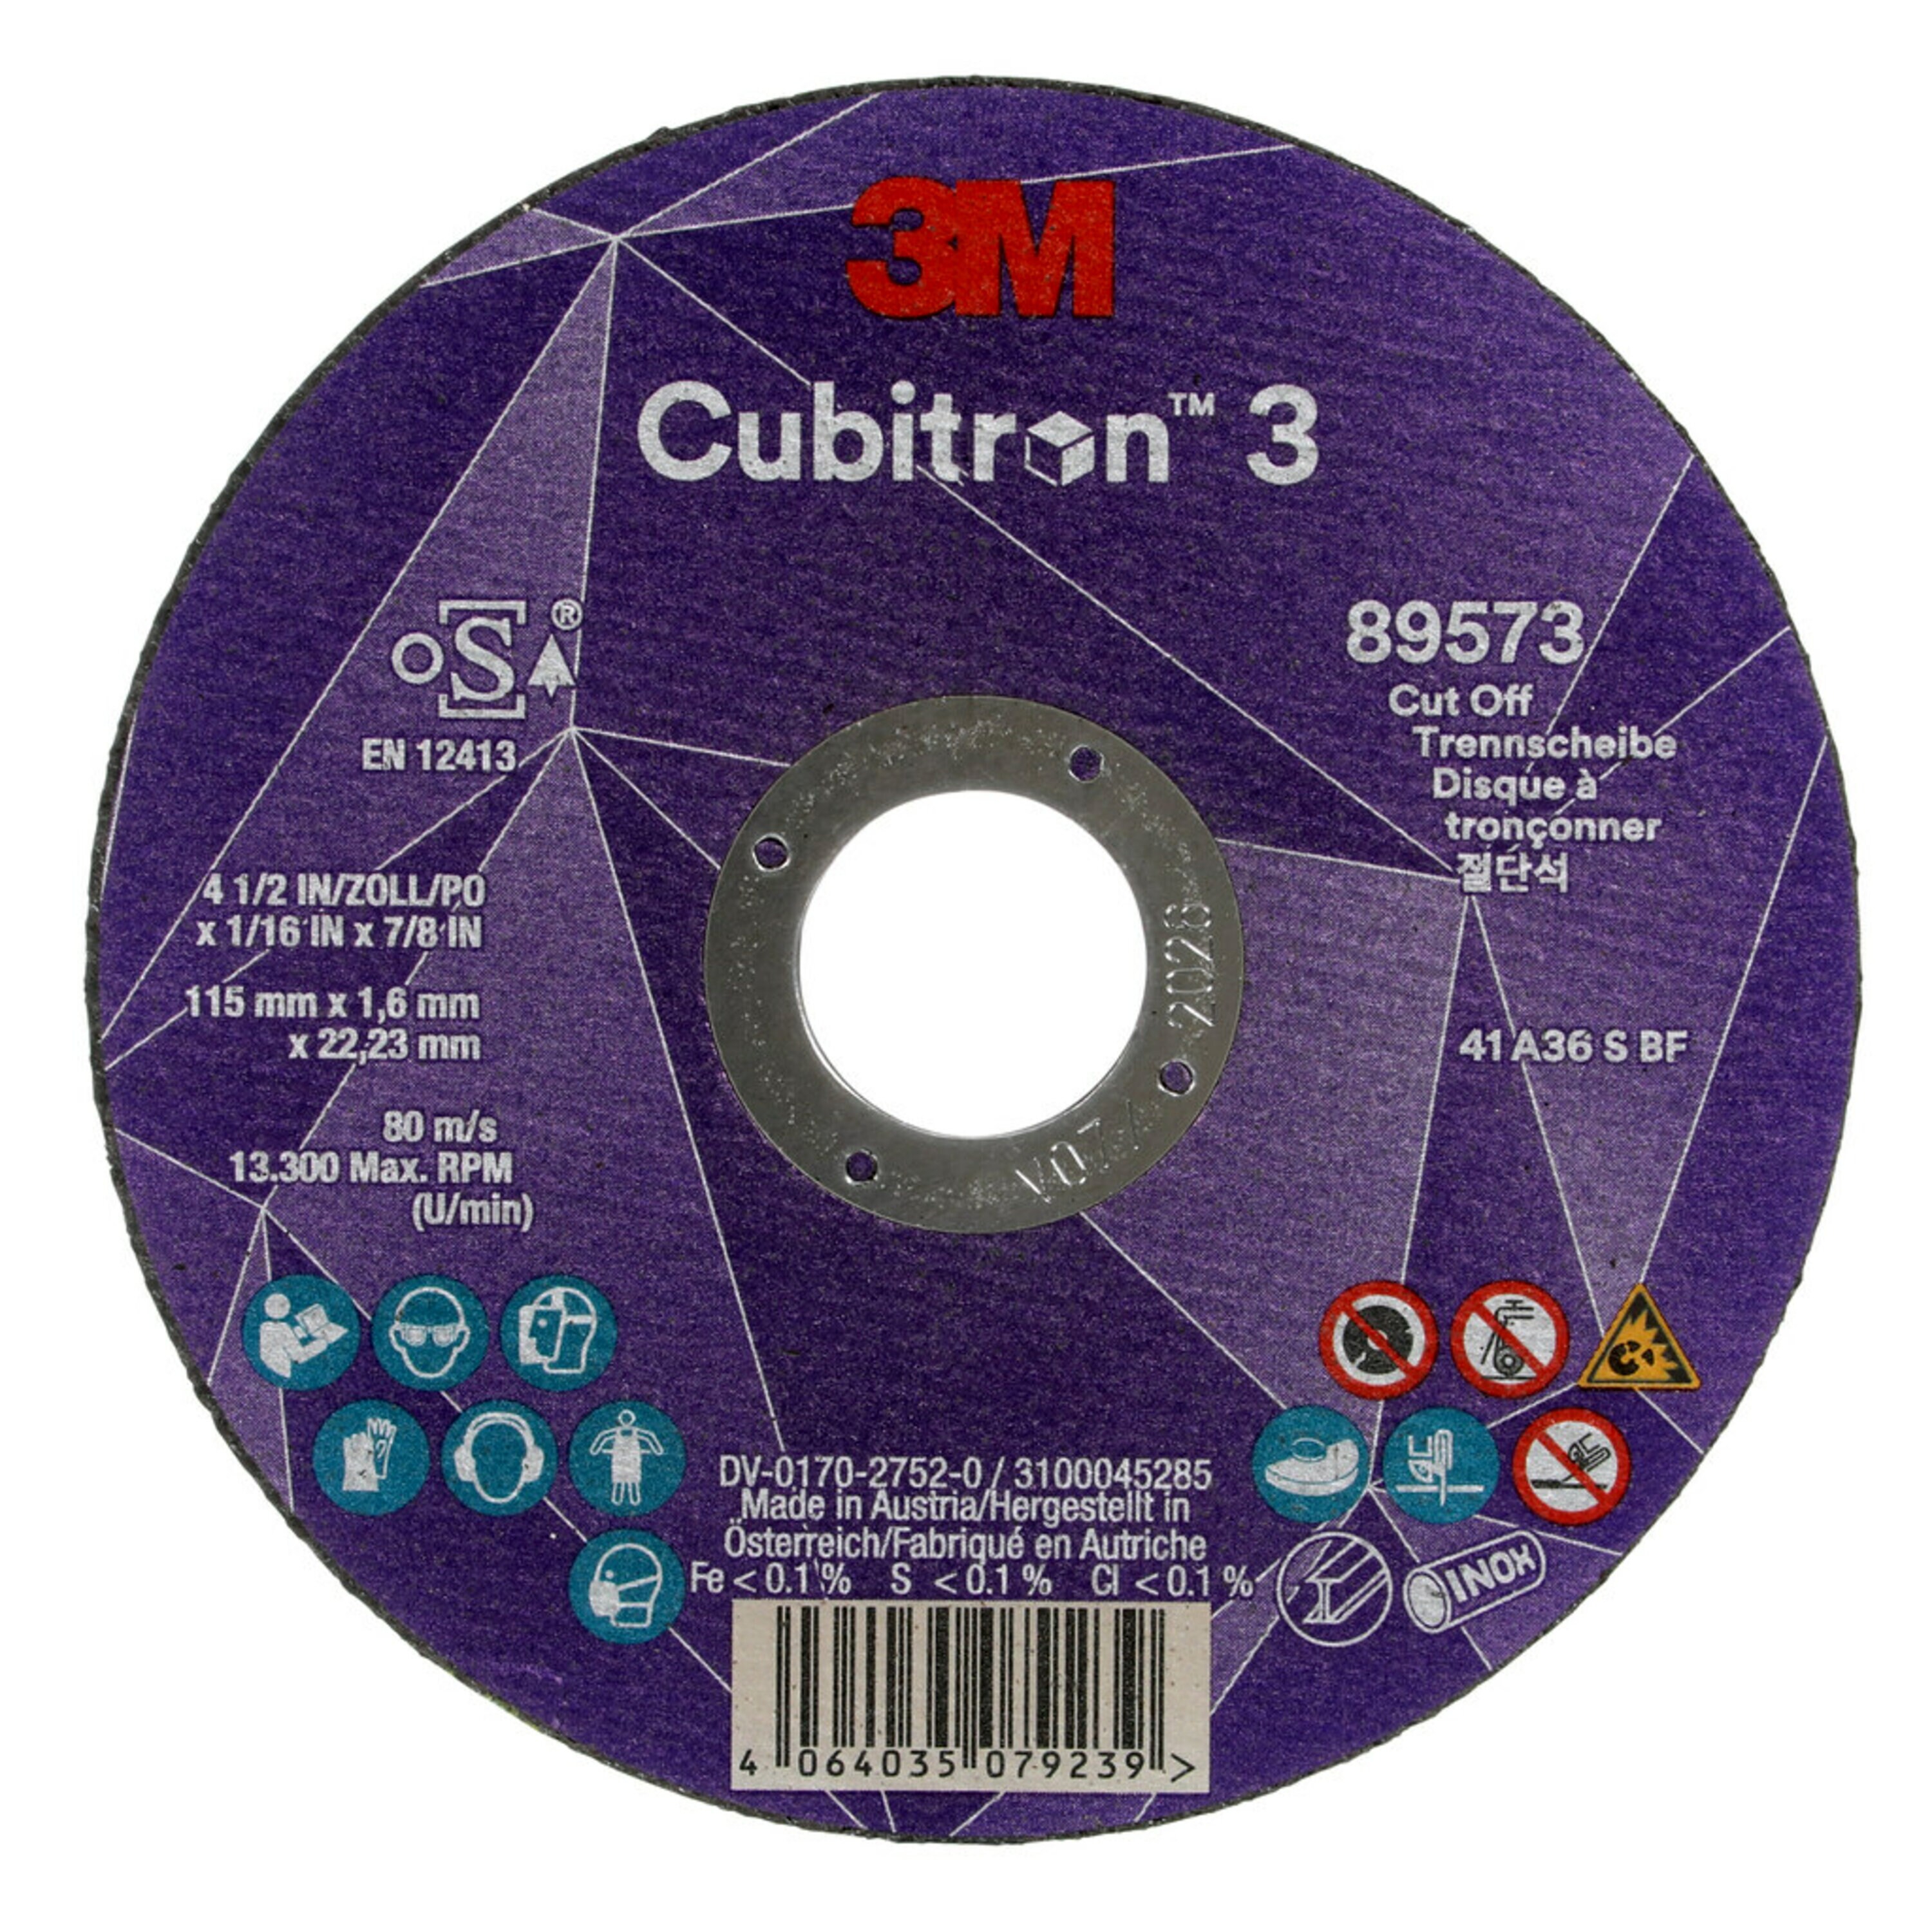 3M Cubitron 3 disco da taglio, 115 mm, 1,6 mm, 22,23 mm, 36 , tipo 41 #89573